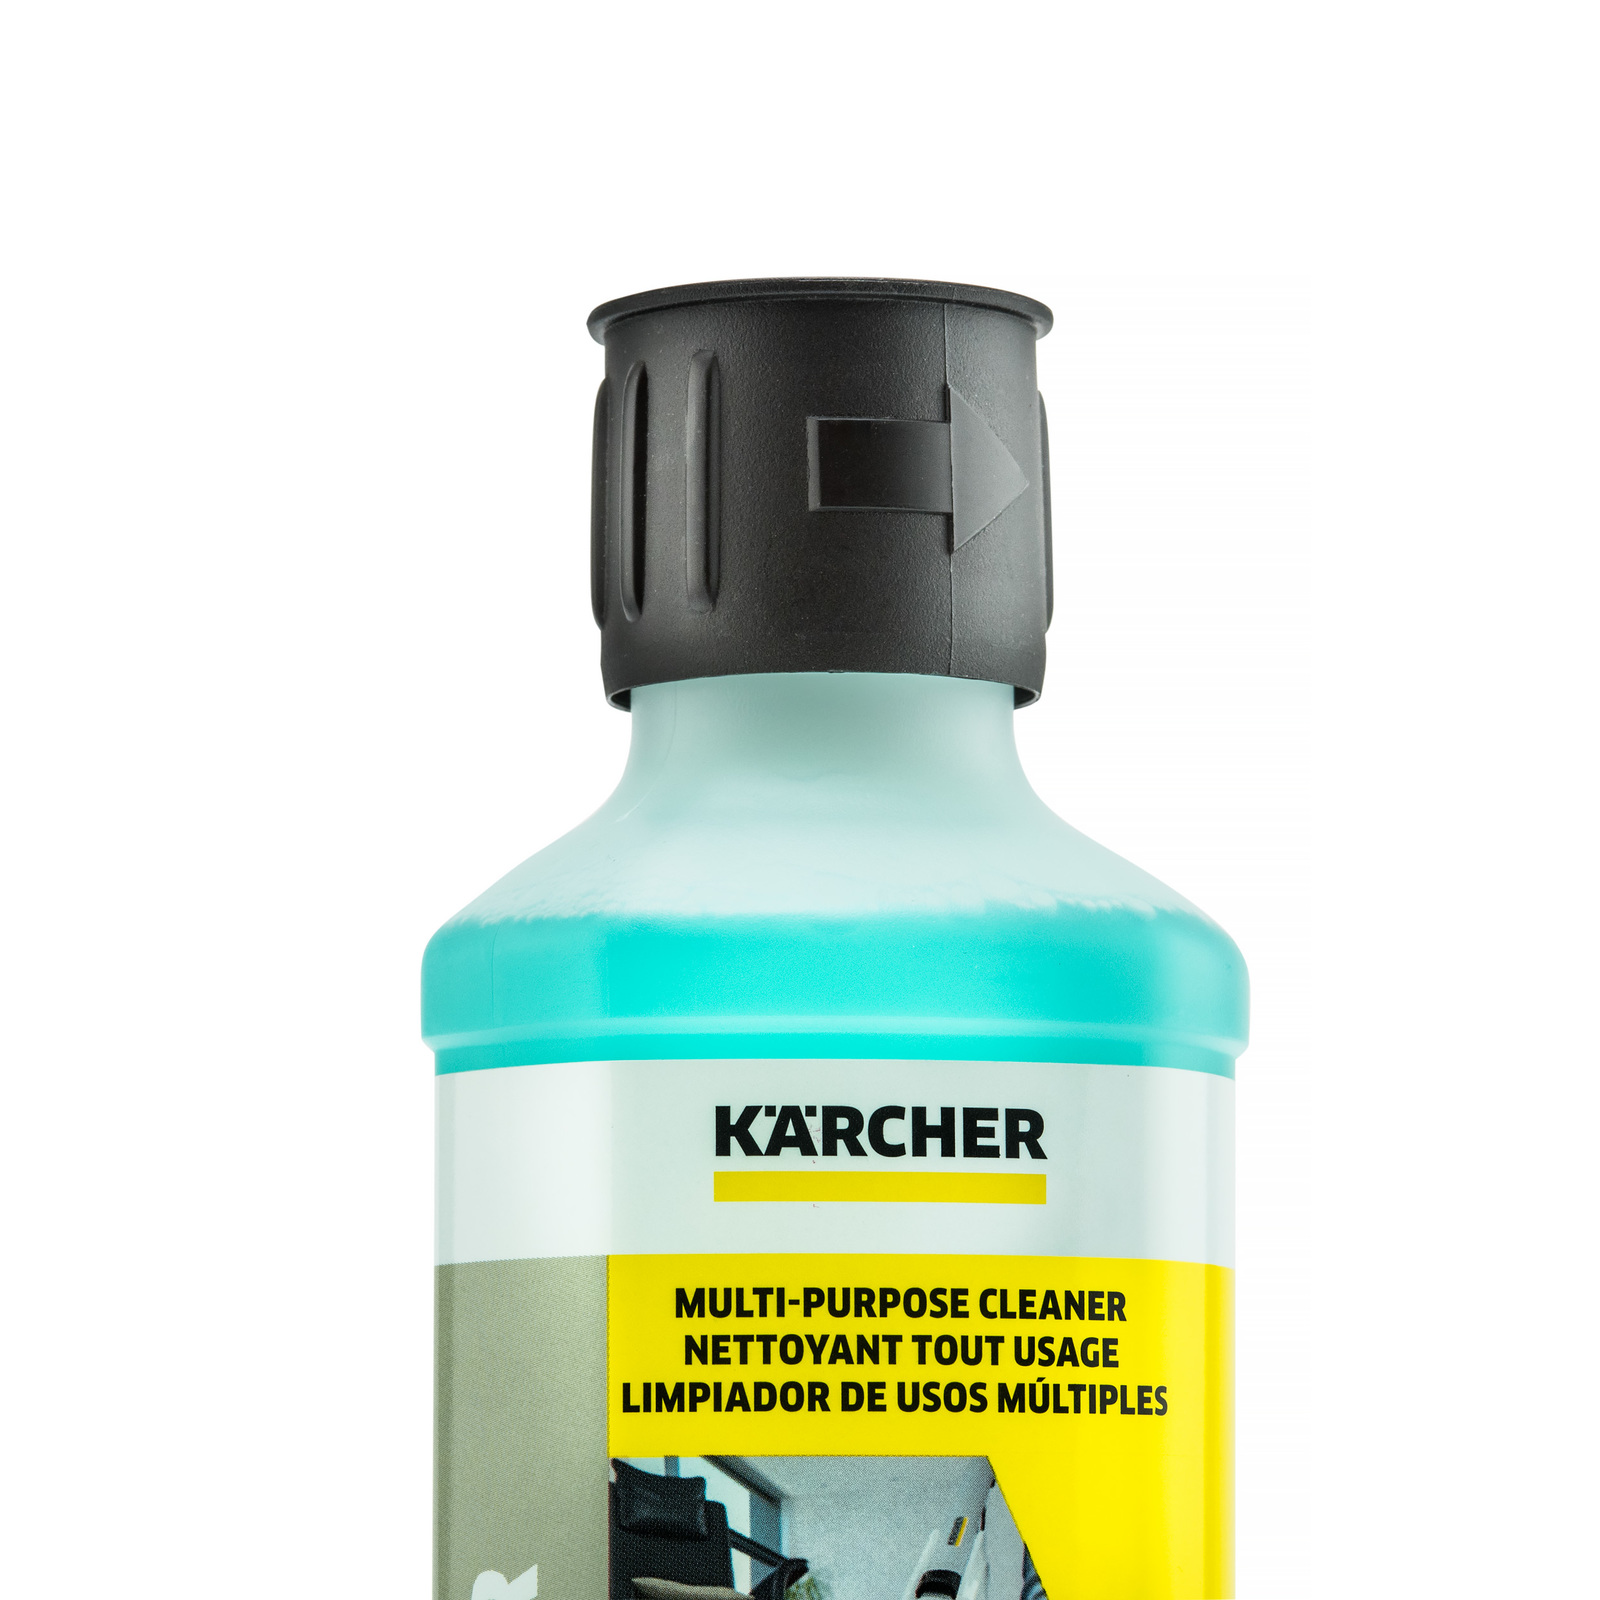 https://s1.kaercher-media.com/media/image/file/169469/d0/karcher-multi-purpose-floor-cleaner-solution-62960460-top.jpg